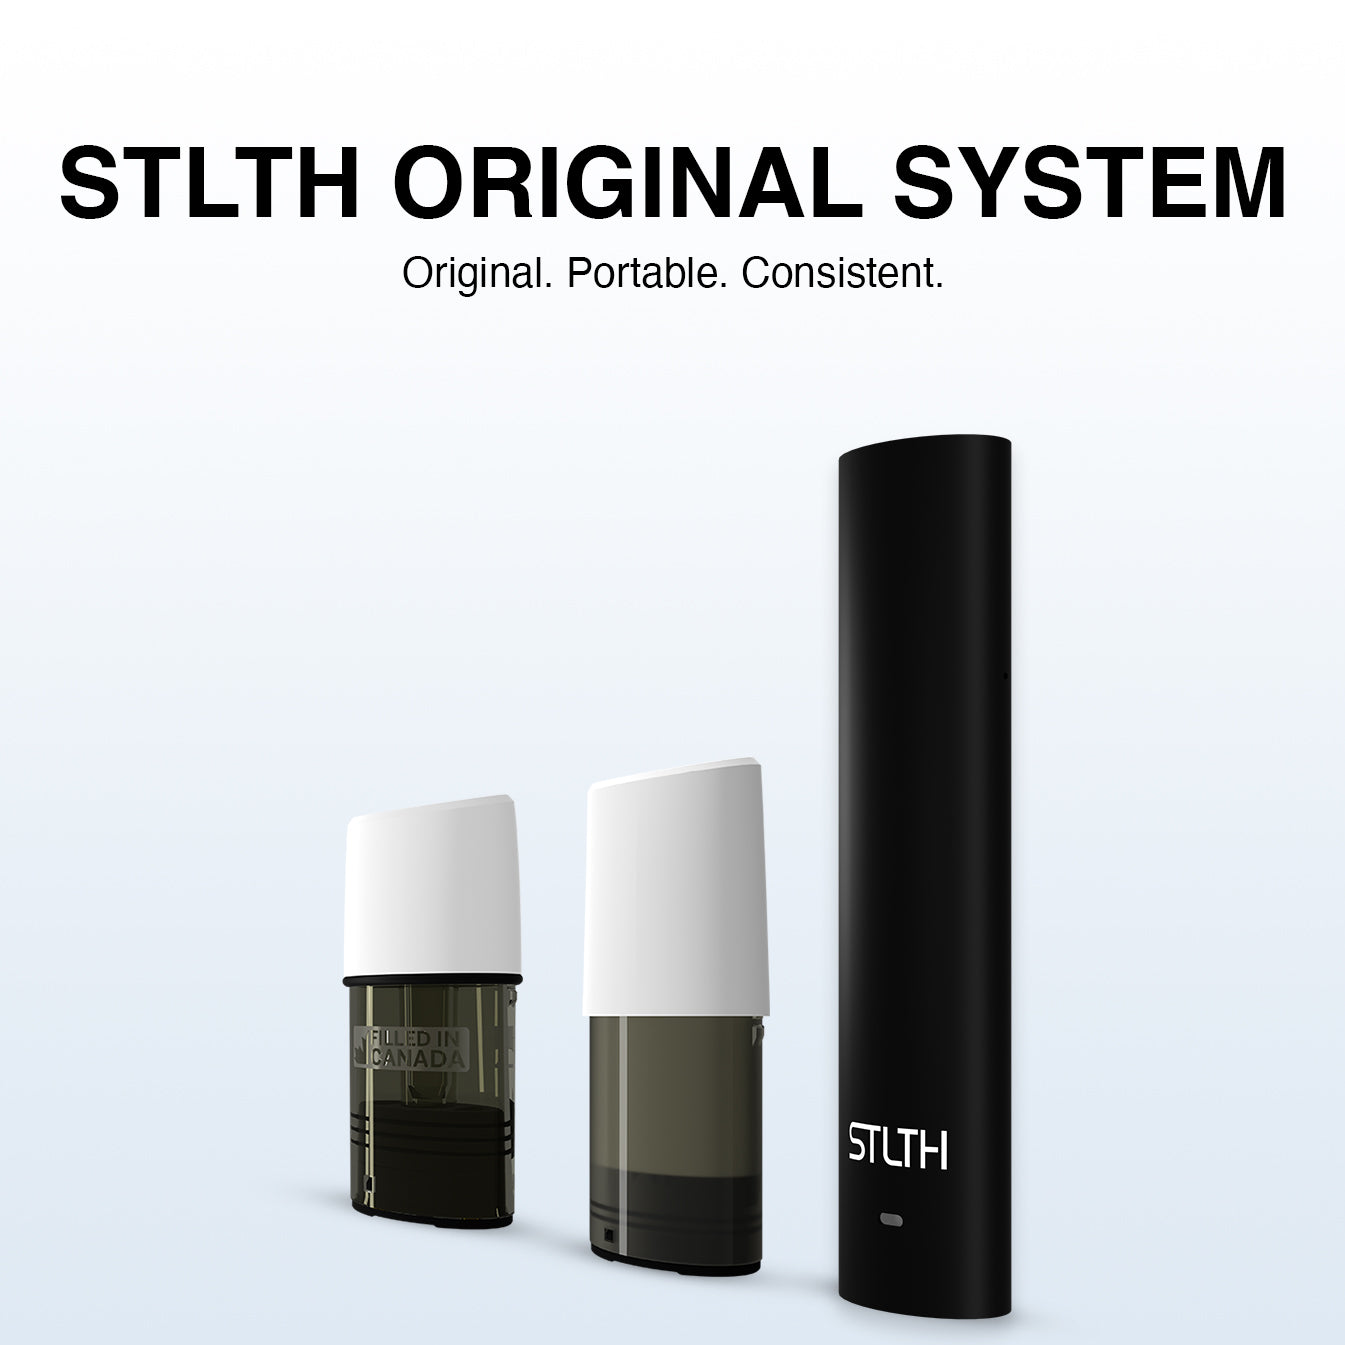 STLTH ORIGINAL SYSTEM: Original. Portable. Consistent.